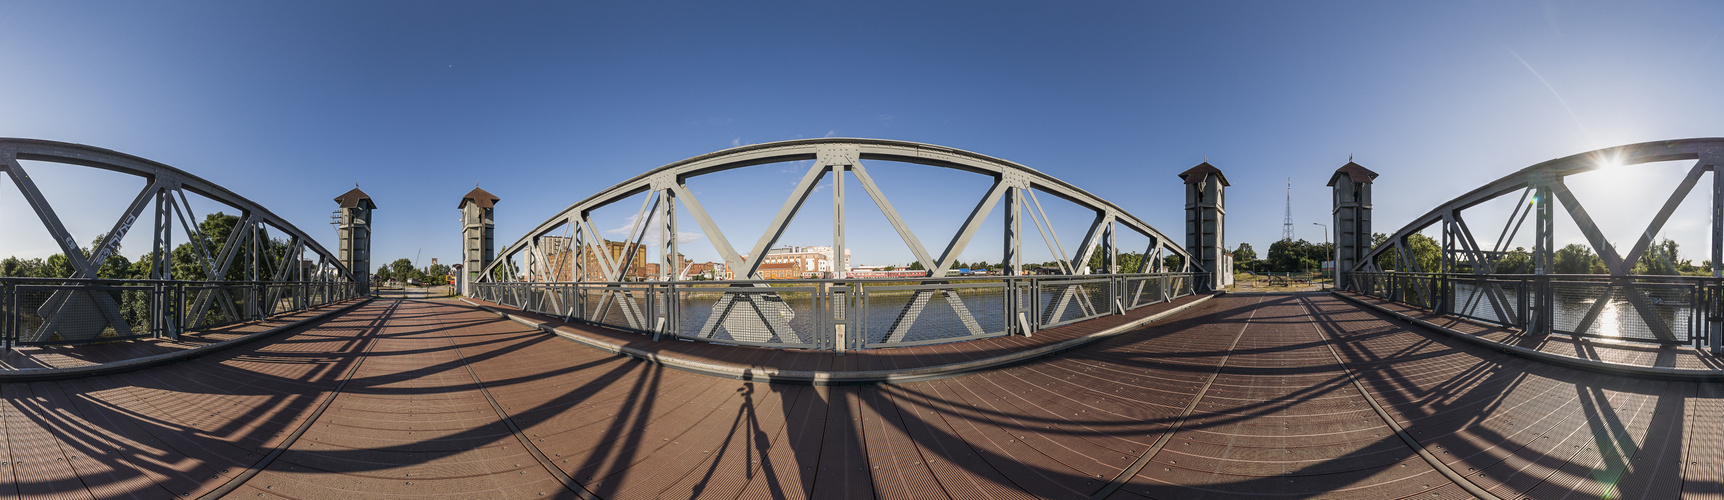 360°-Brückenpanorama